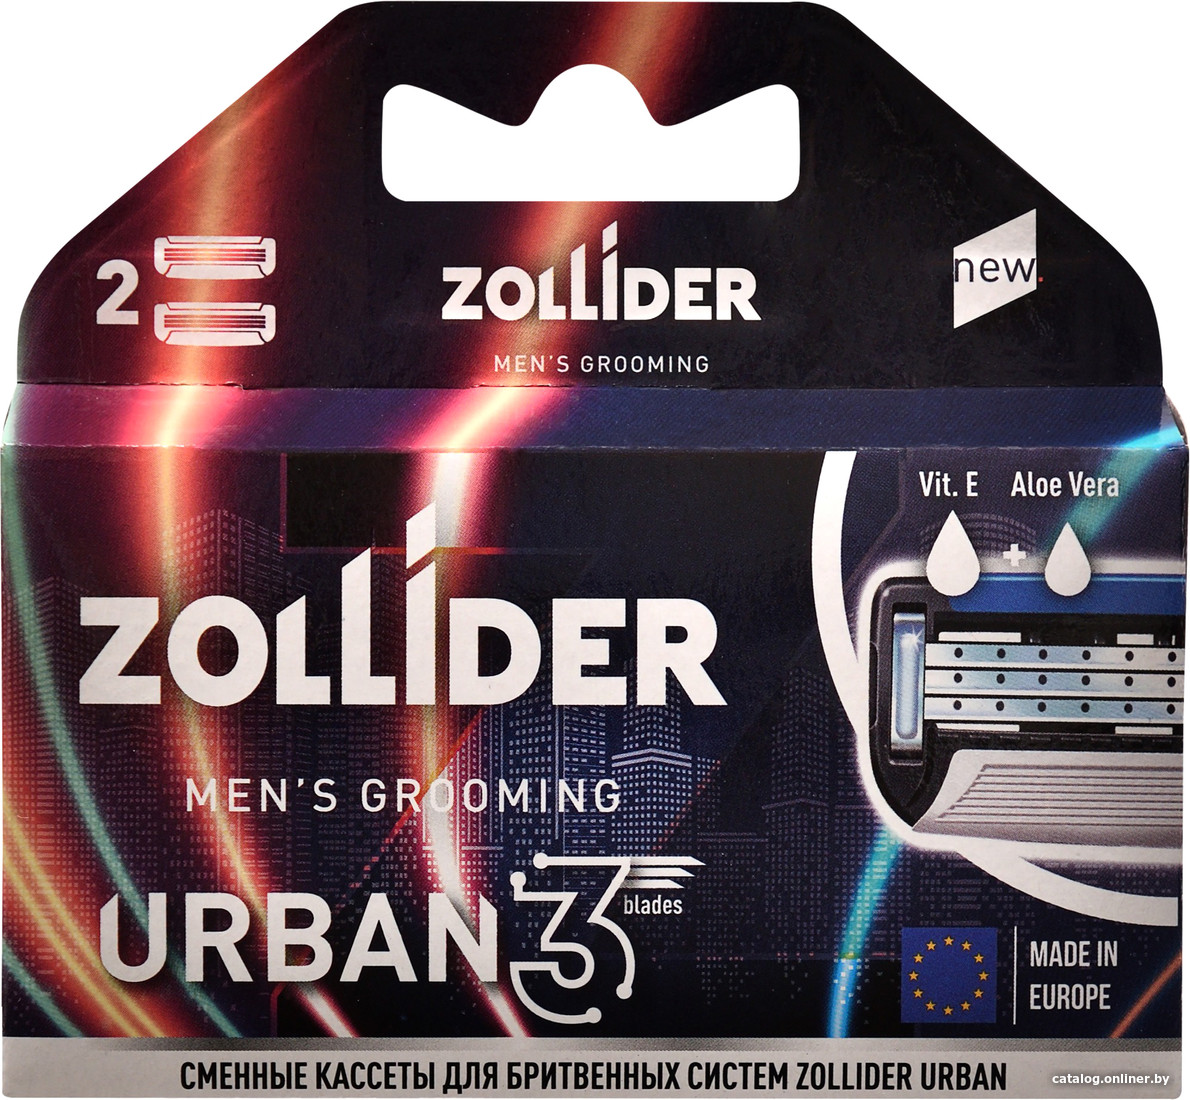 

Набор сменных лезвий Zollider Urban 3 Blades (2 шт)